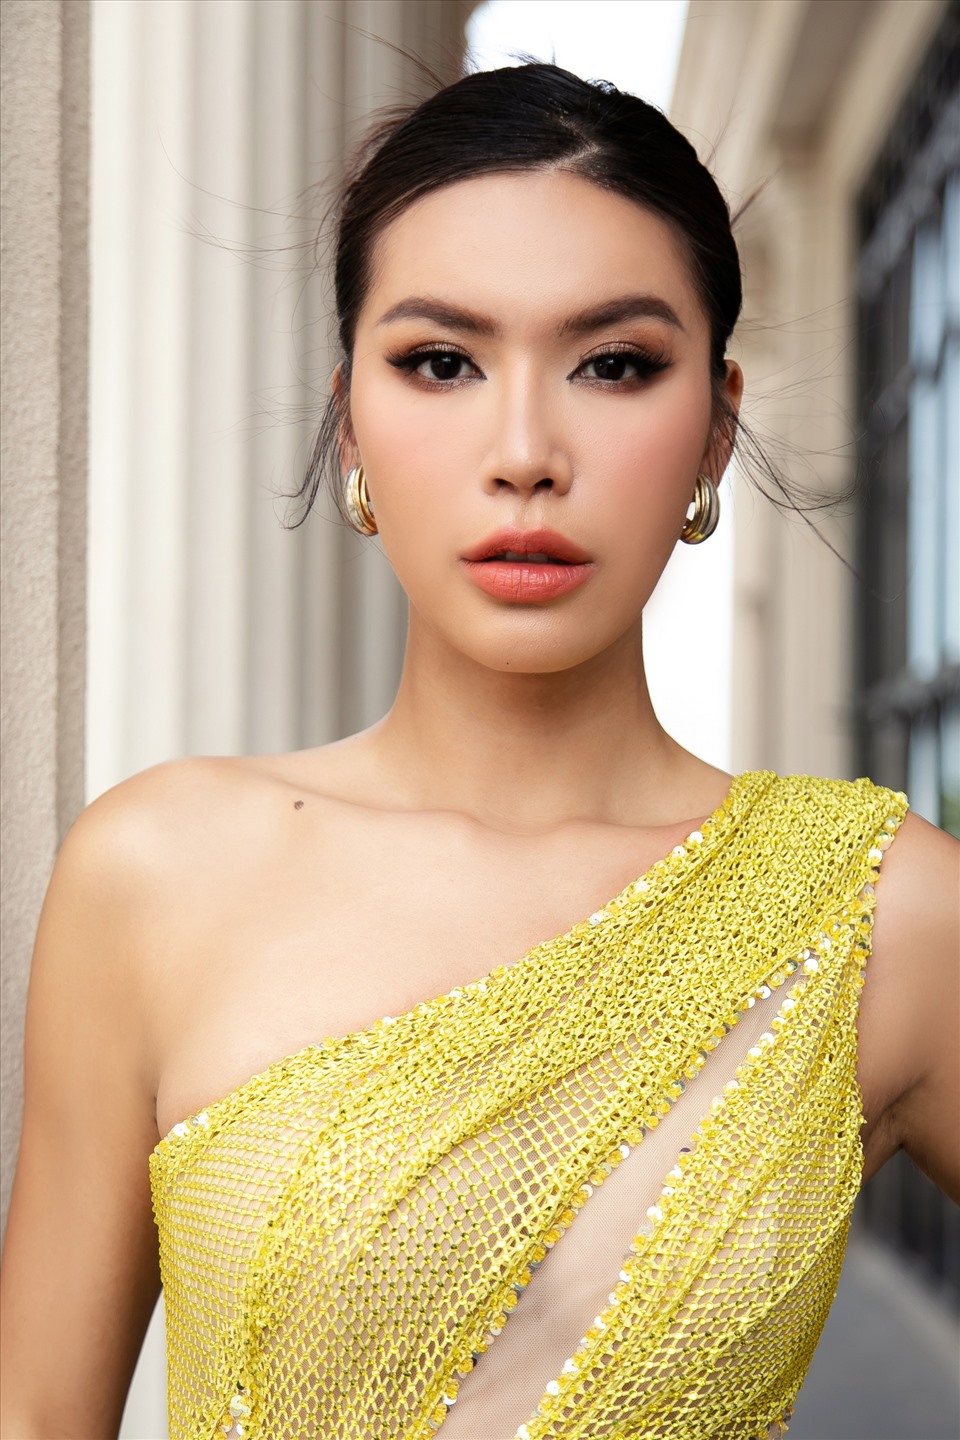 Minh Tú cho biết, cô đến với cuộc thi Hoa hậu Thể thao Việt Nam 2022 với mong muốn truyền cảm hứng cũng như chia sẻ những kinh nghiệm của bản thân cho những người đẹp có cùng đam mê và hoài bão.